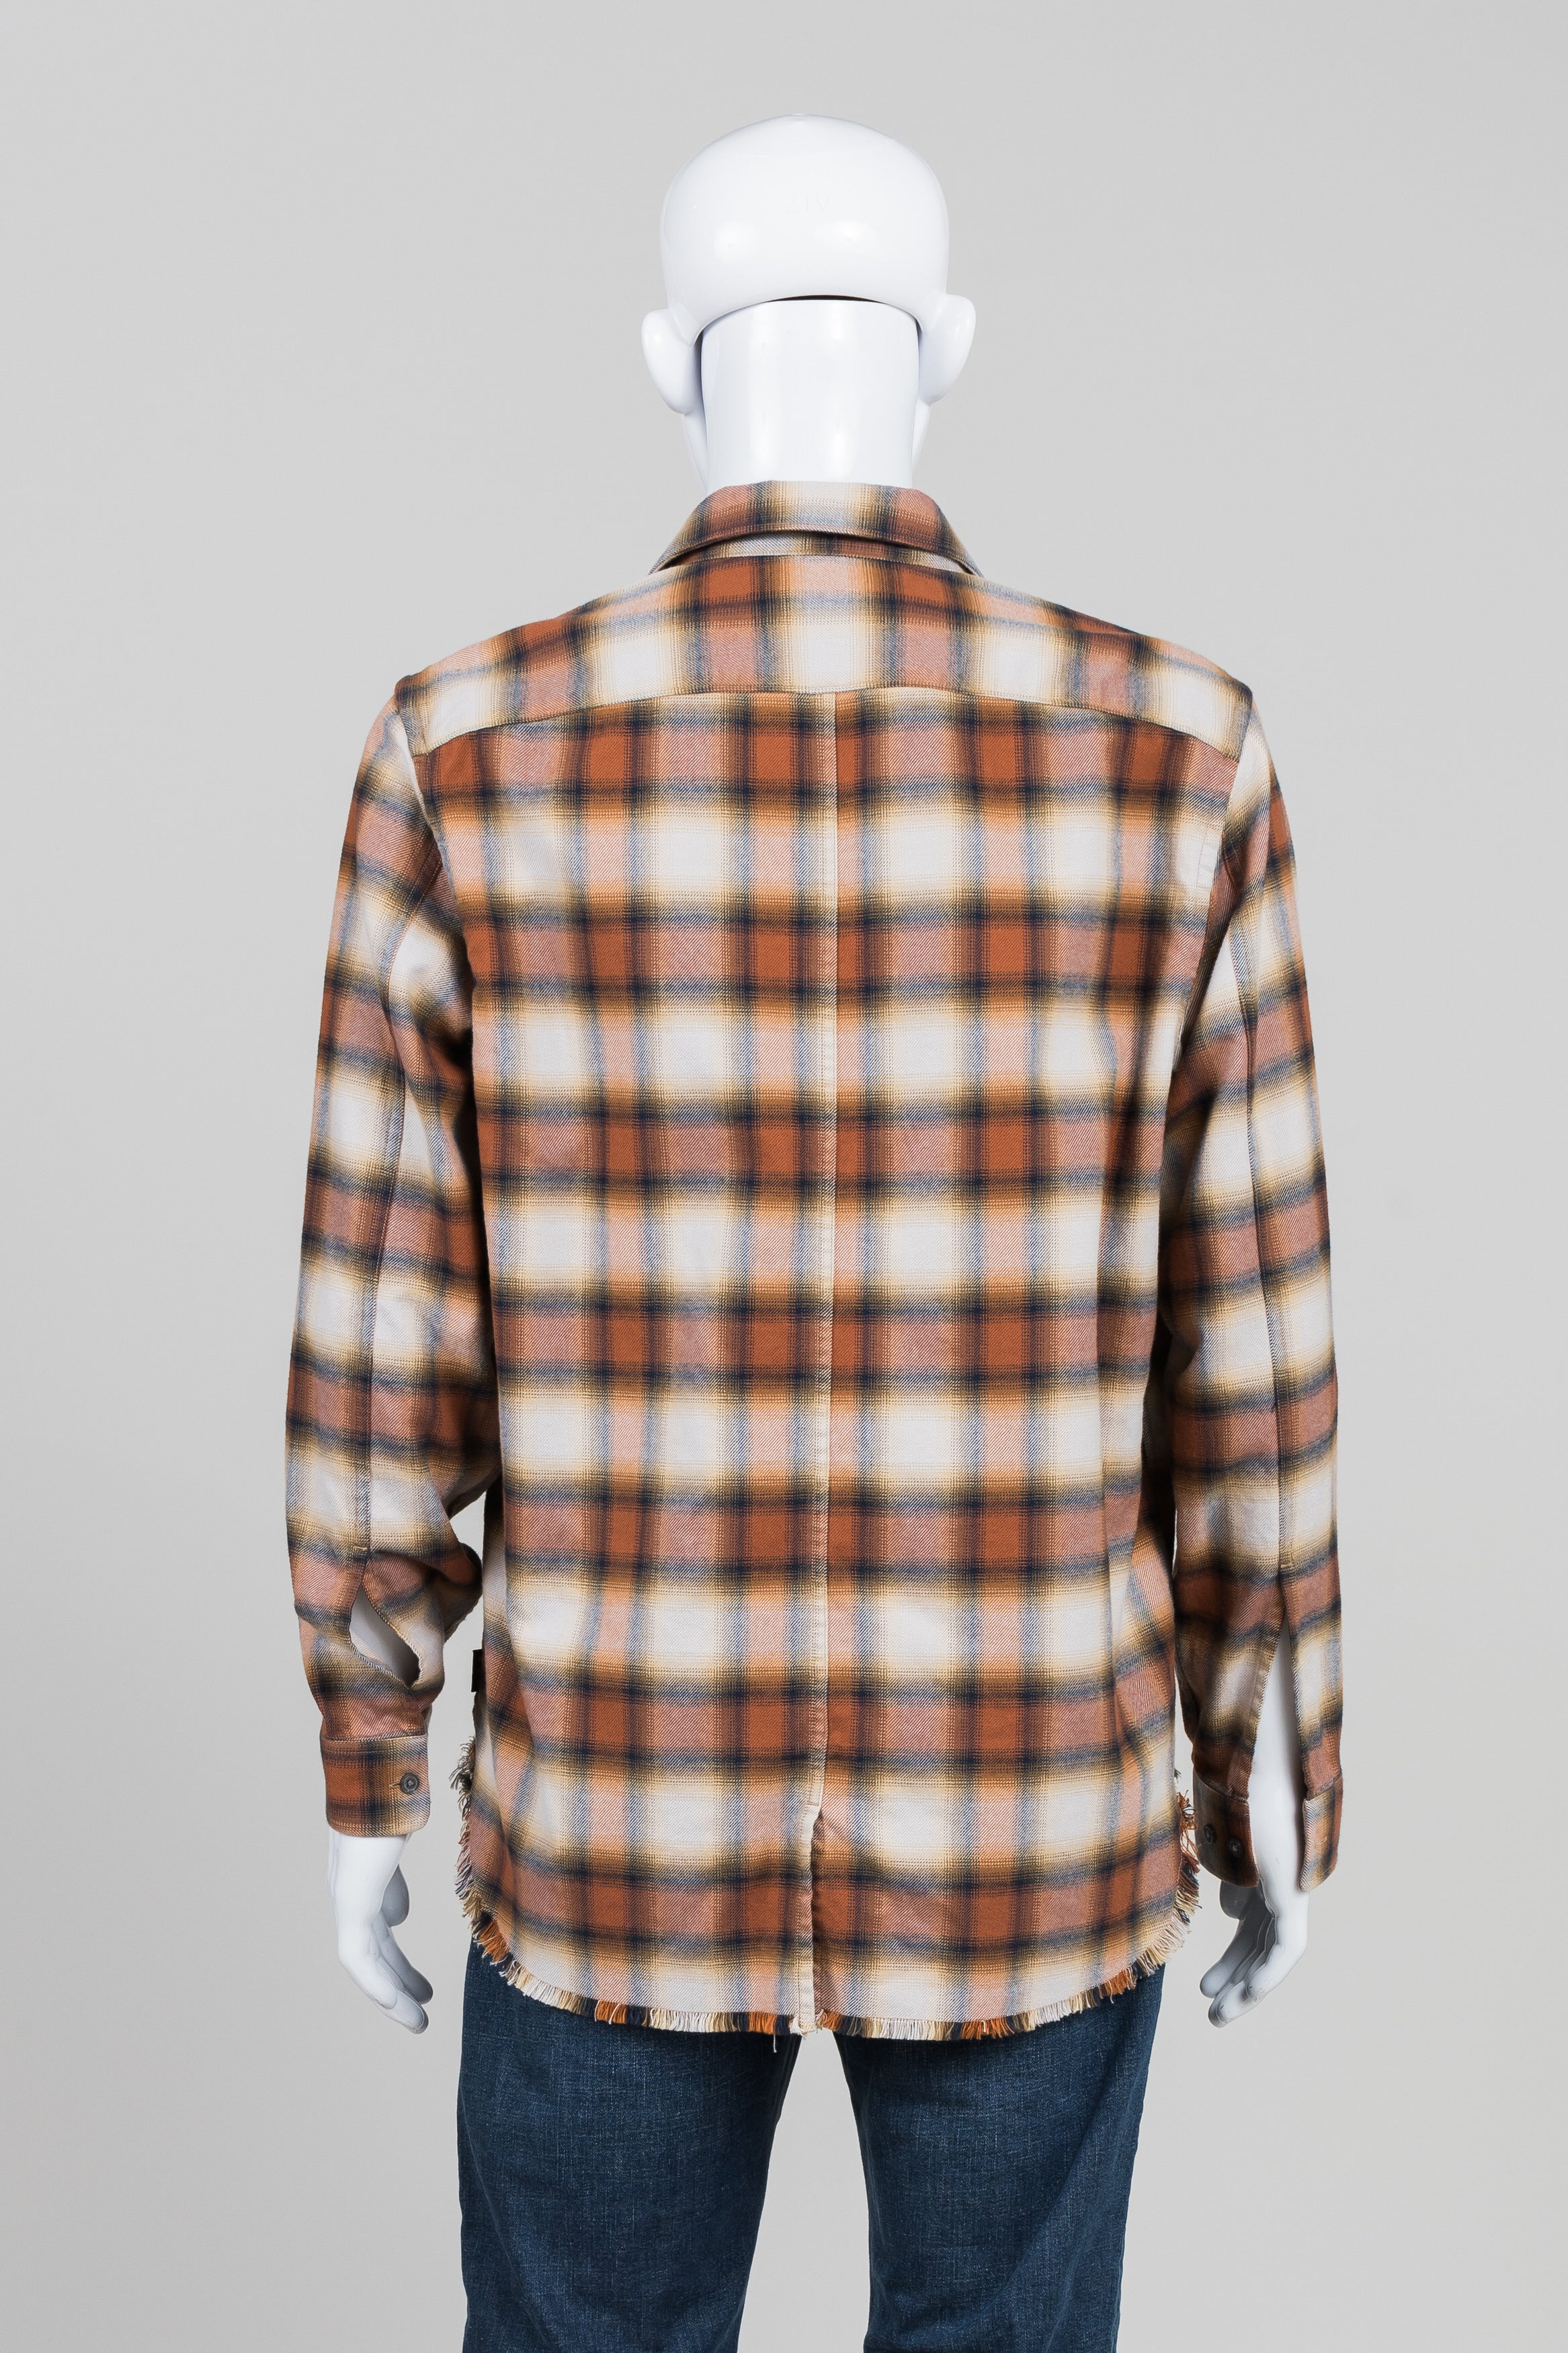 John Varvatos Rust Plaid Shirt (L)